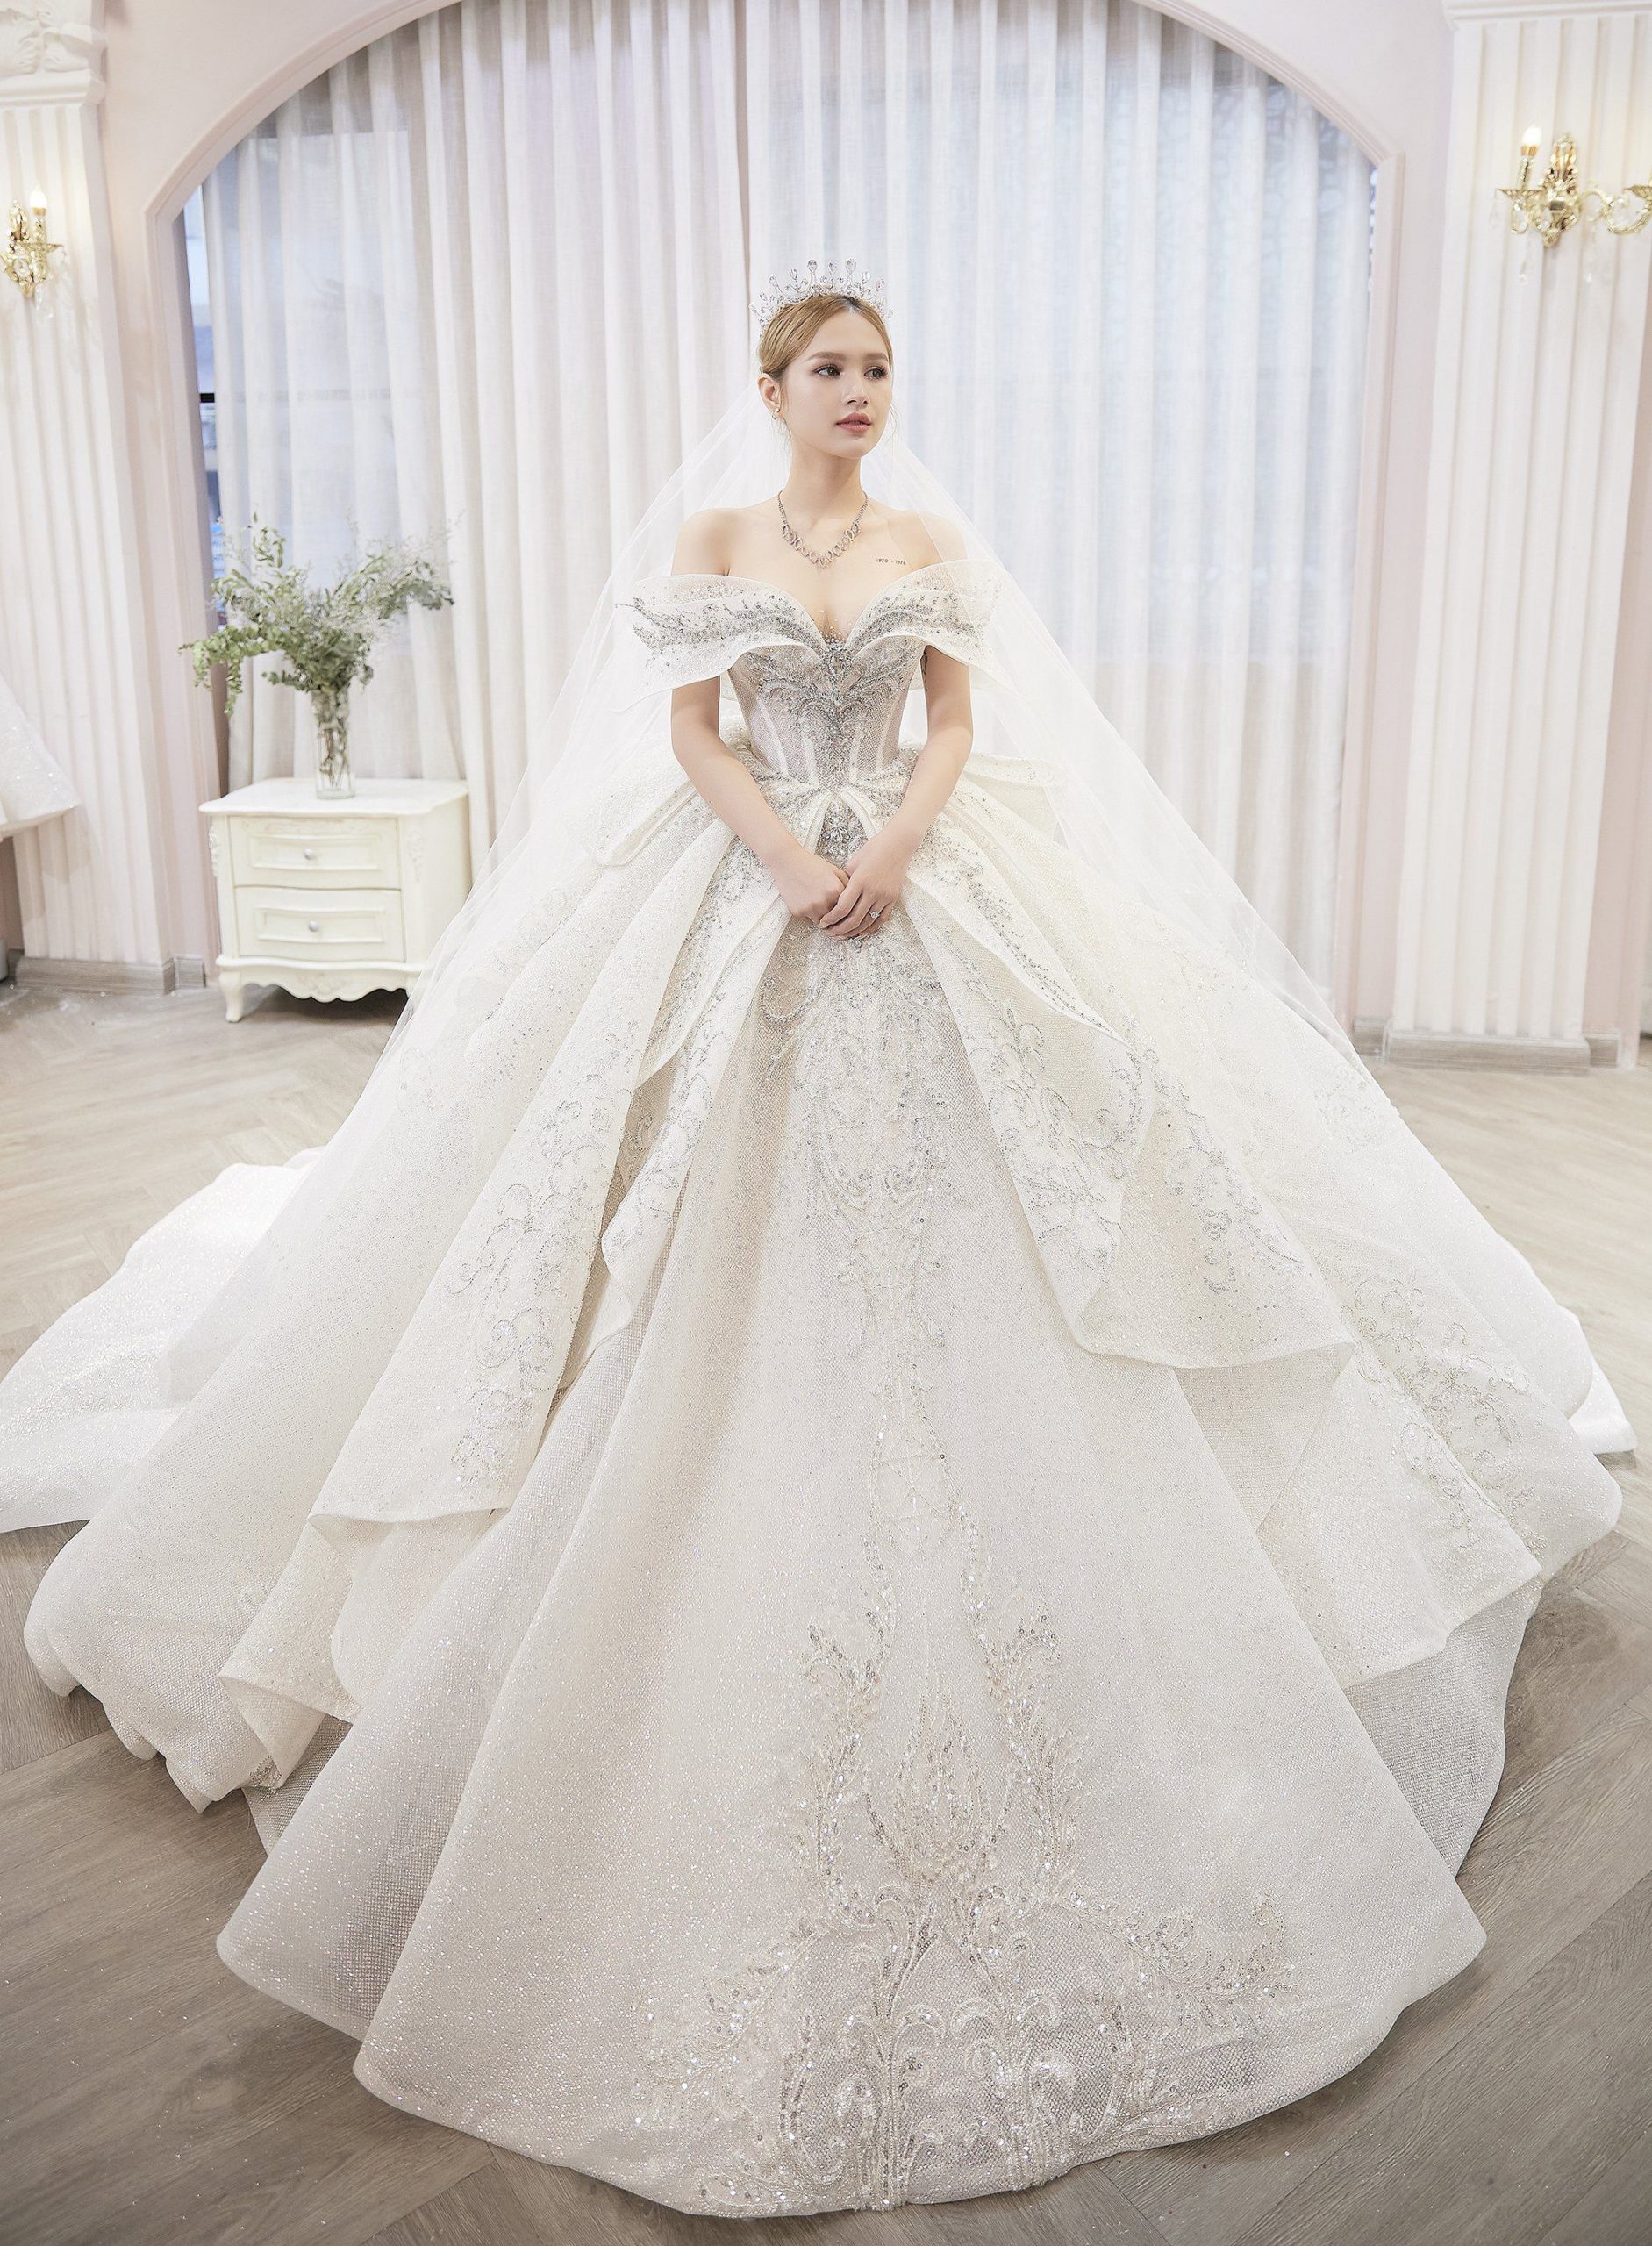 Lựa chọn áo cưới đẹp nhất phù hợp cho cô dâu 2020  2021